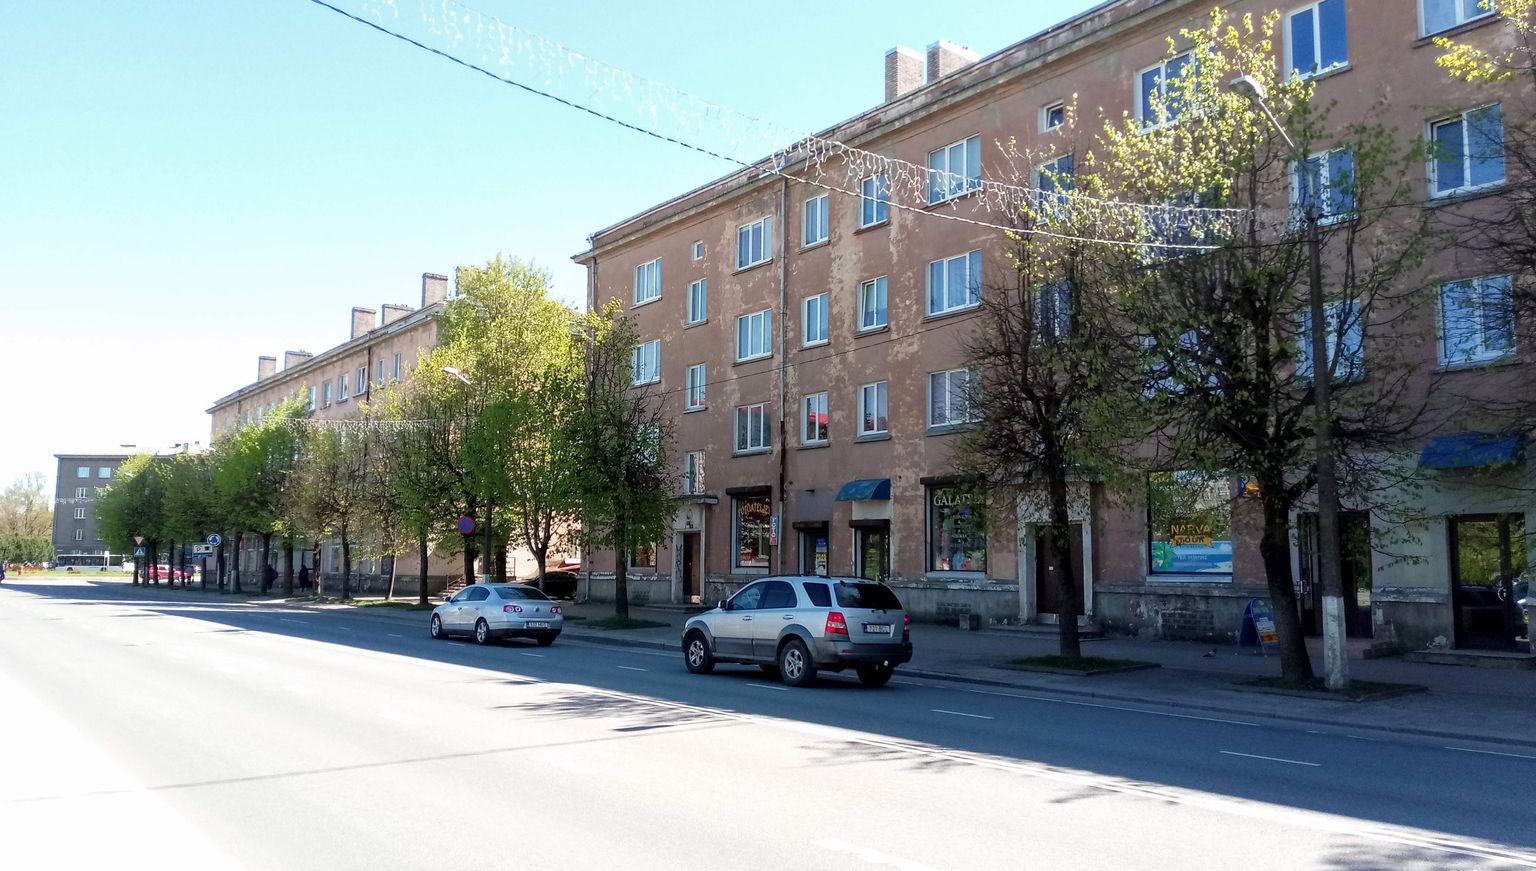 В домах в начале Таллиннского шоссе в Нарве расположены различные маленькие магазины и другие фирмы. Но припарковаться здесь нельзя.